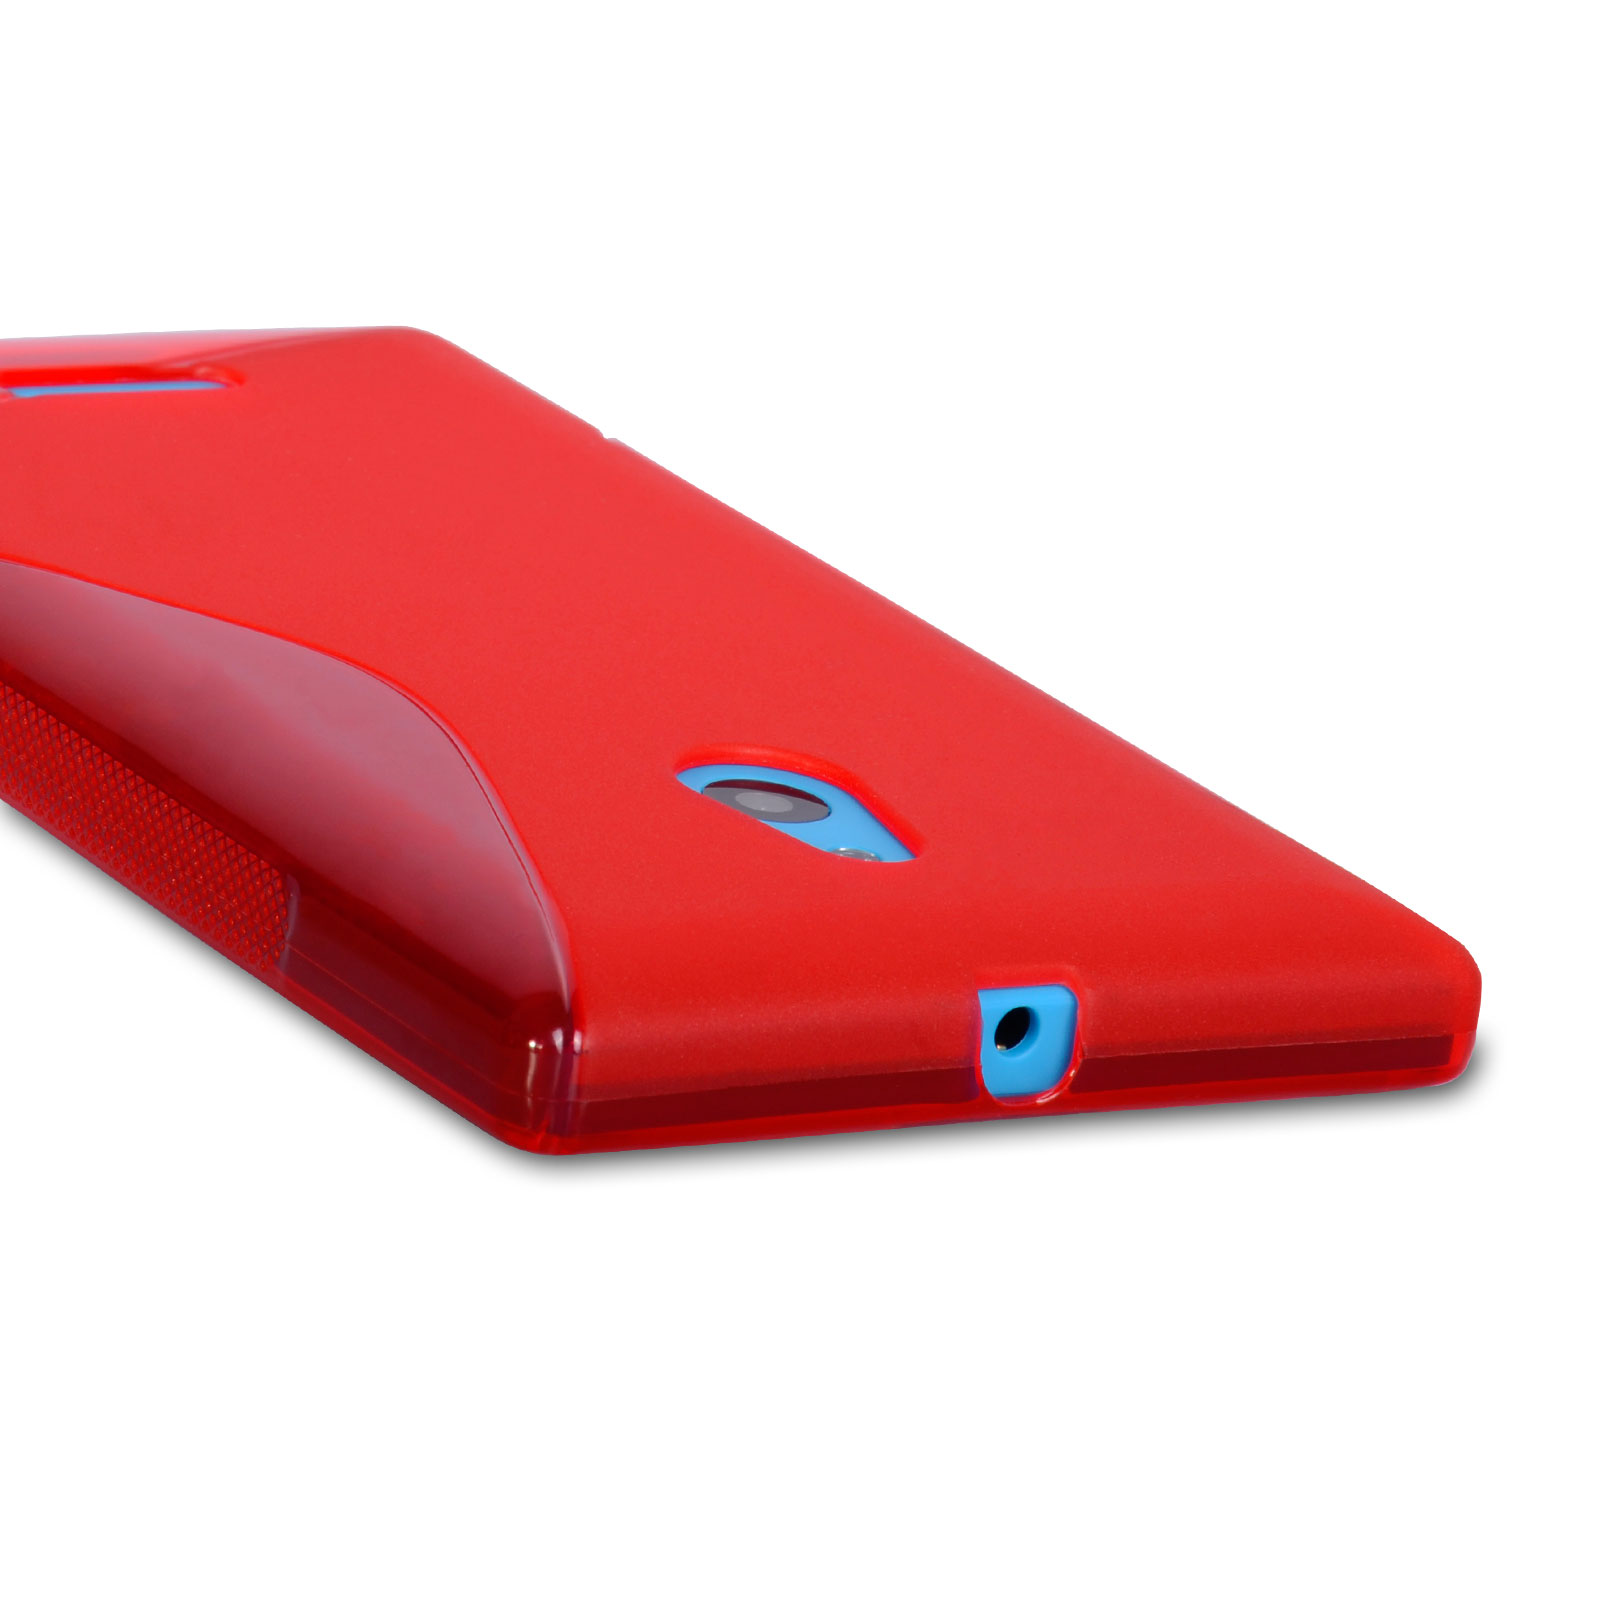 Caseflex Nokia XL Silicone Gel S-Line Case - Red